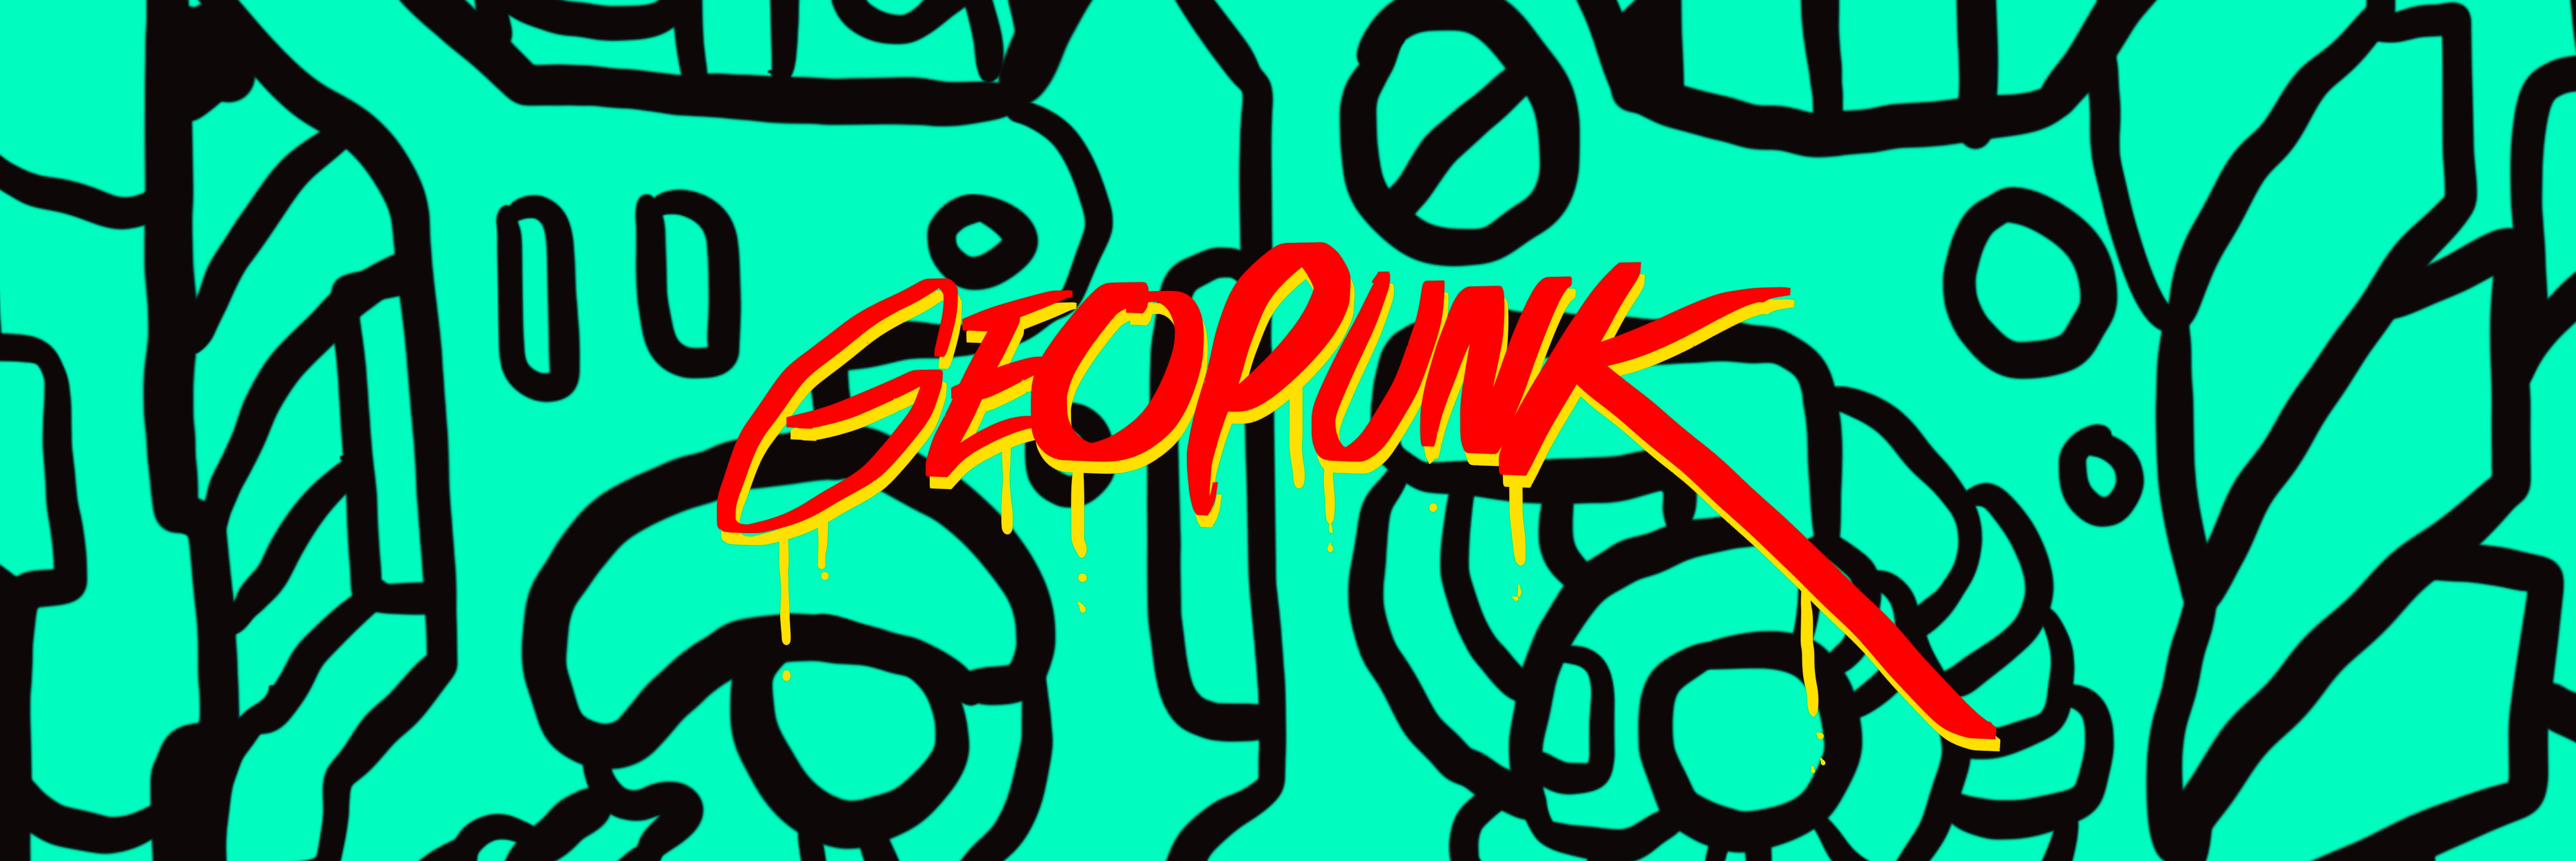 Geo Punk banner